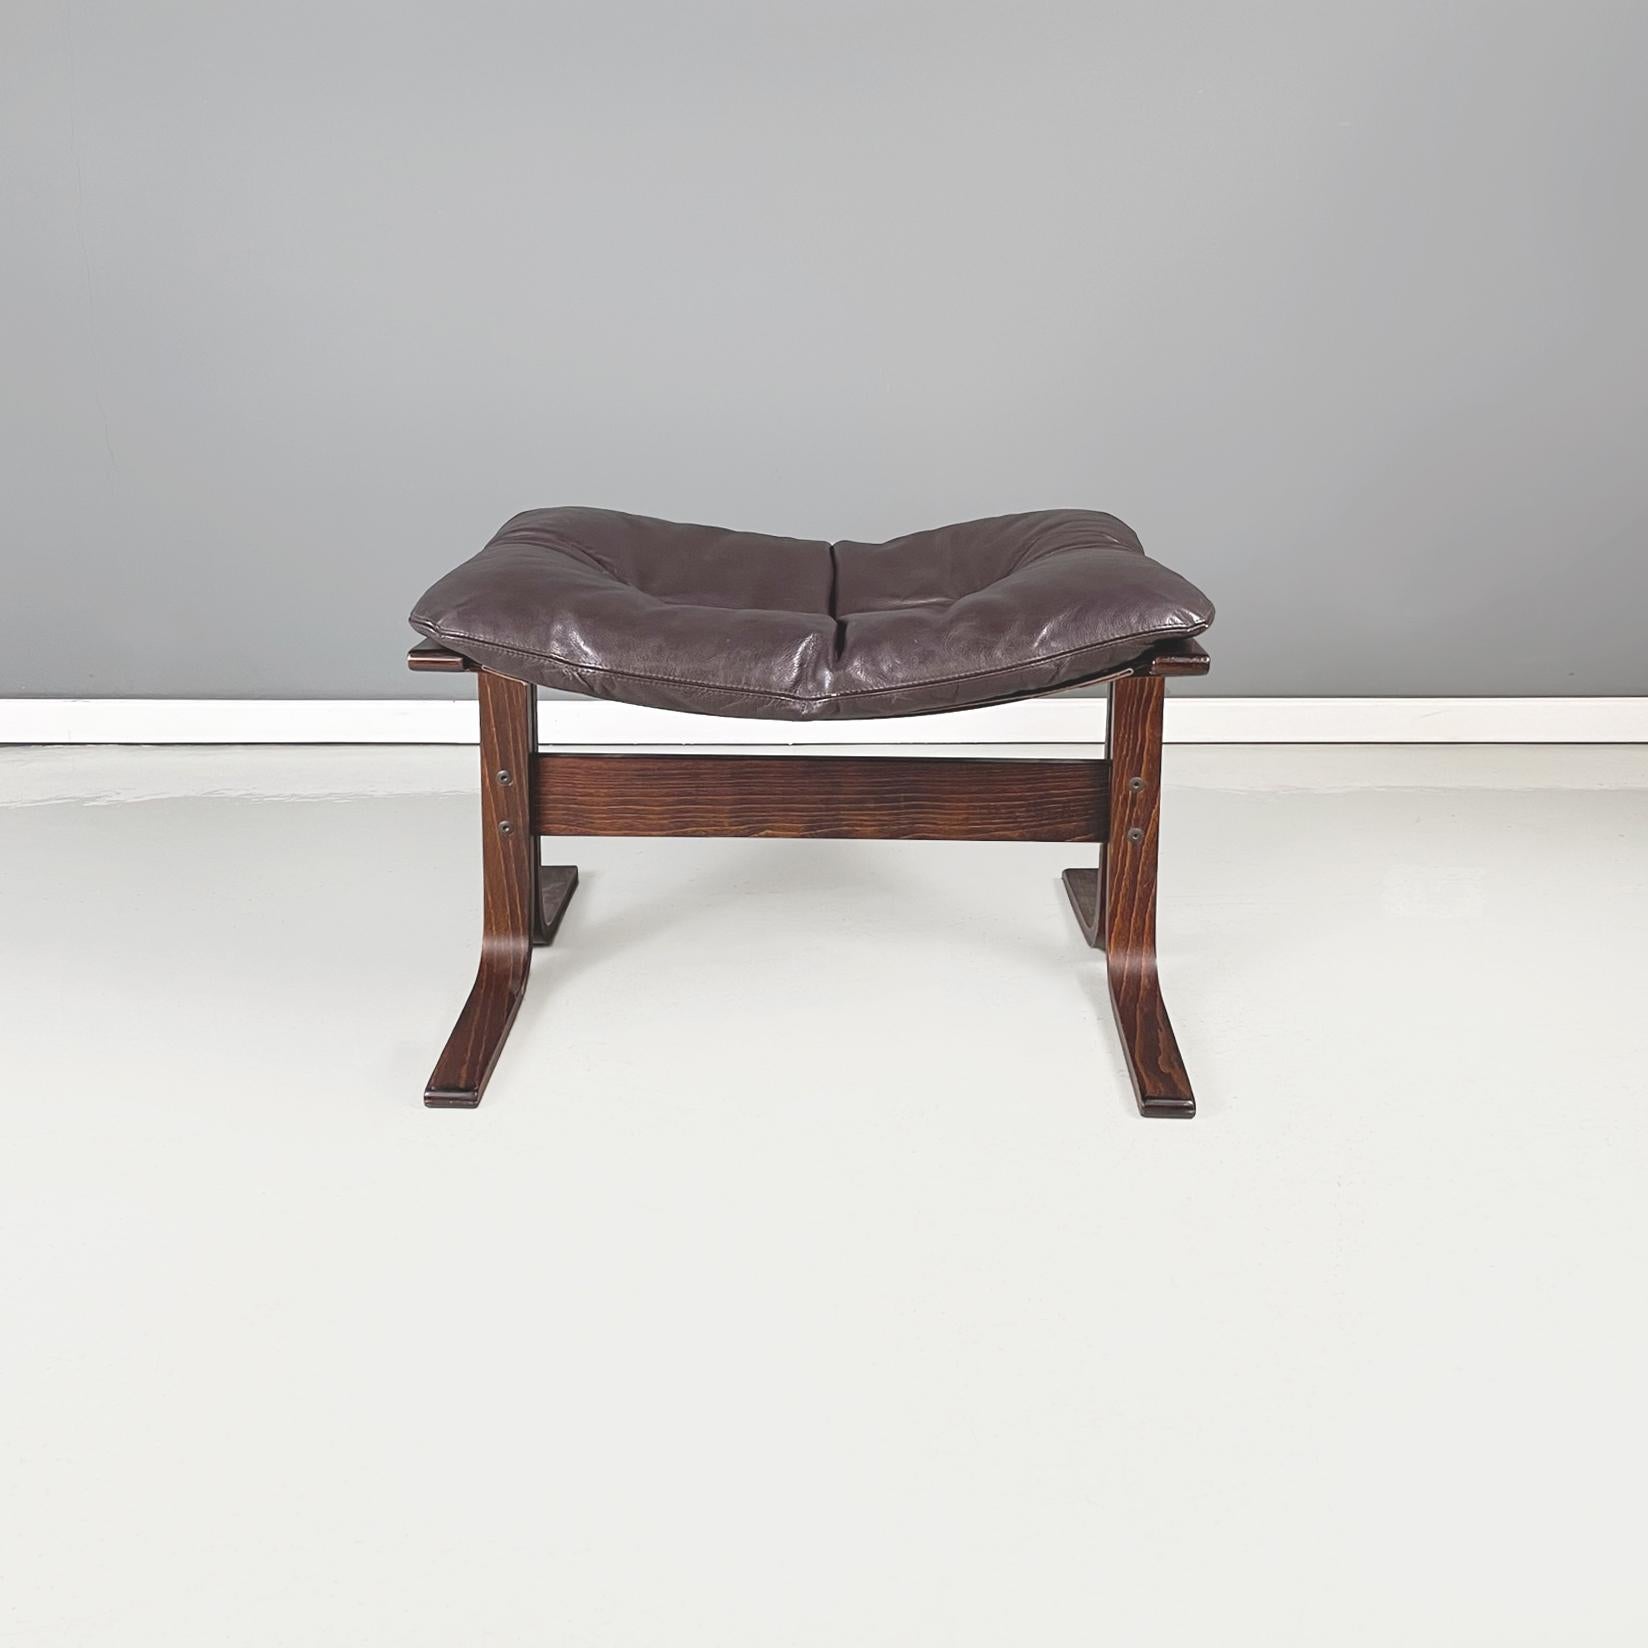 Norwegen modern Braunes Leder Holz Pouf Siesta von Igmar Relling für Westnofa Furniture, 1970er
Pouf mod. Siesta mit rechteckigem Sitz in dunkelbraunem Leder mit Knöpfen. Der Sitz ist mit einem braunen Stoff bezogen. Die Struktur der Ottomane ist